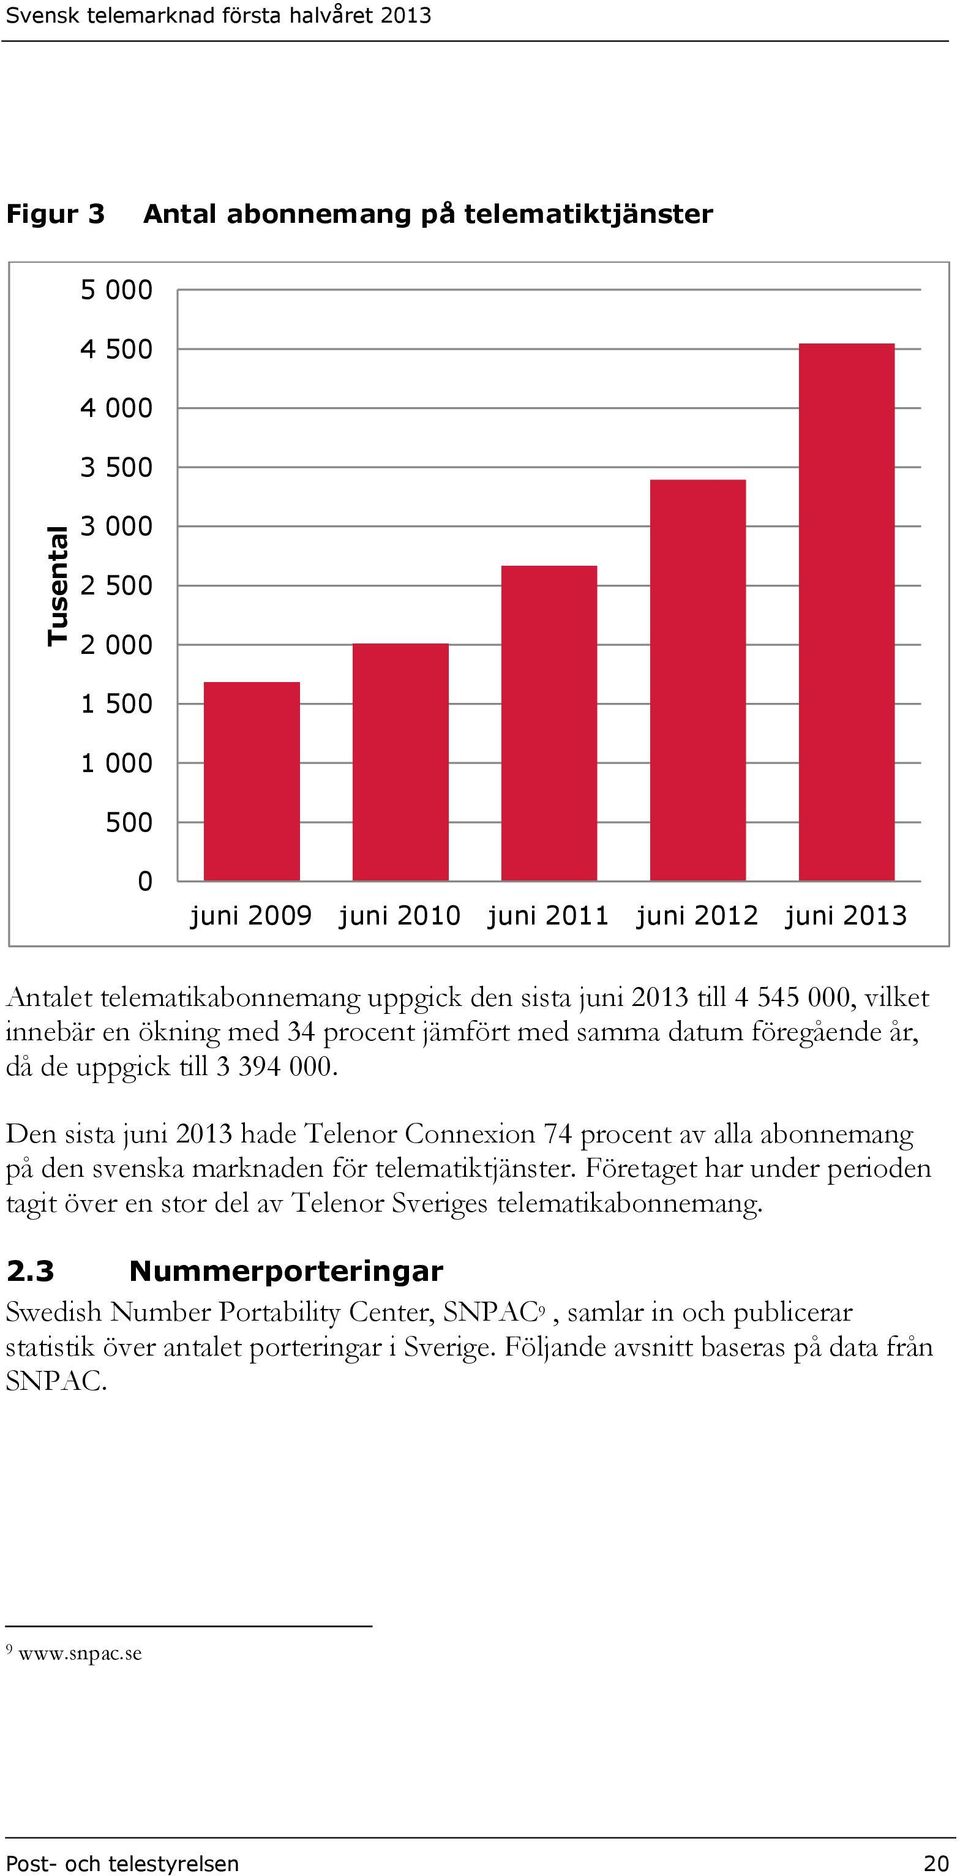 Den sista juni 2013 hade Telenor Connexion 74 procent av alla abonnemang på den svenska marknaden för telematiktjänster.